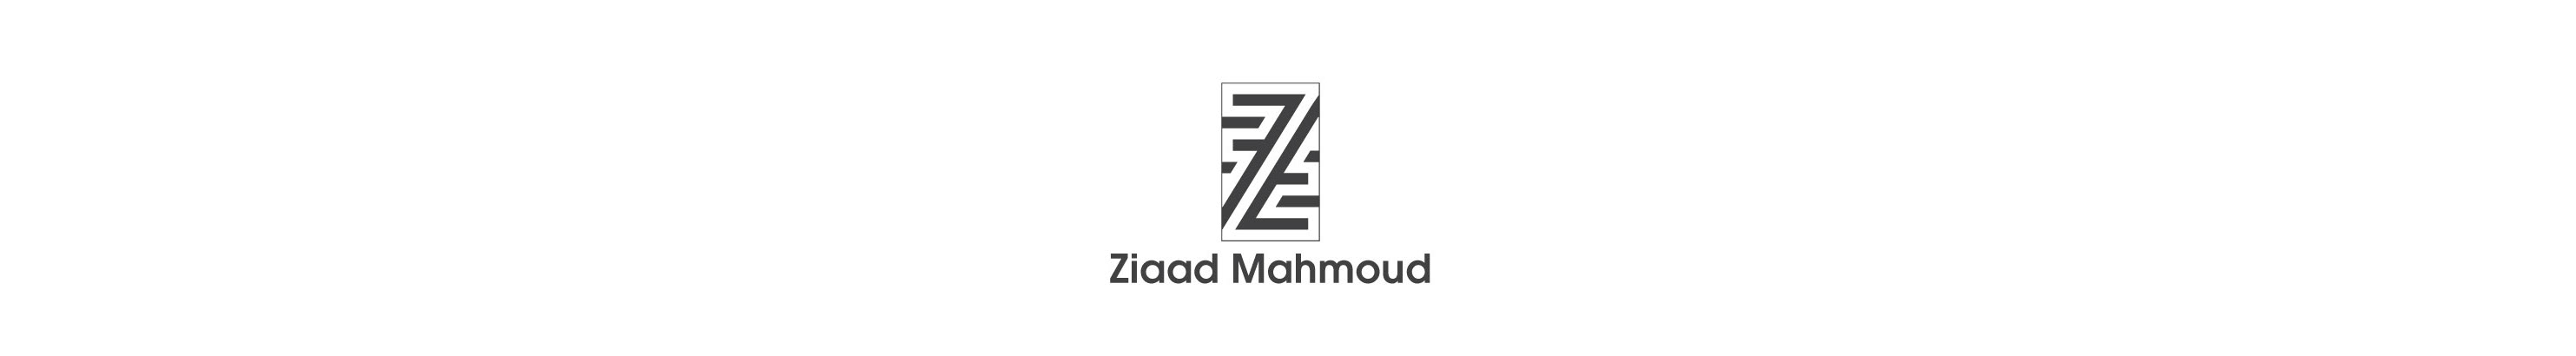 Ziaad Mahmoud's profile banner